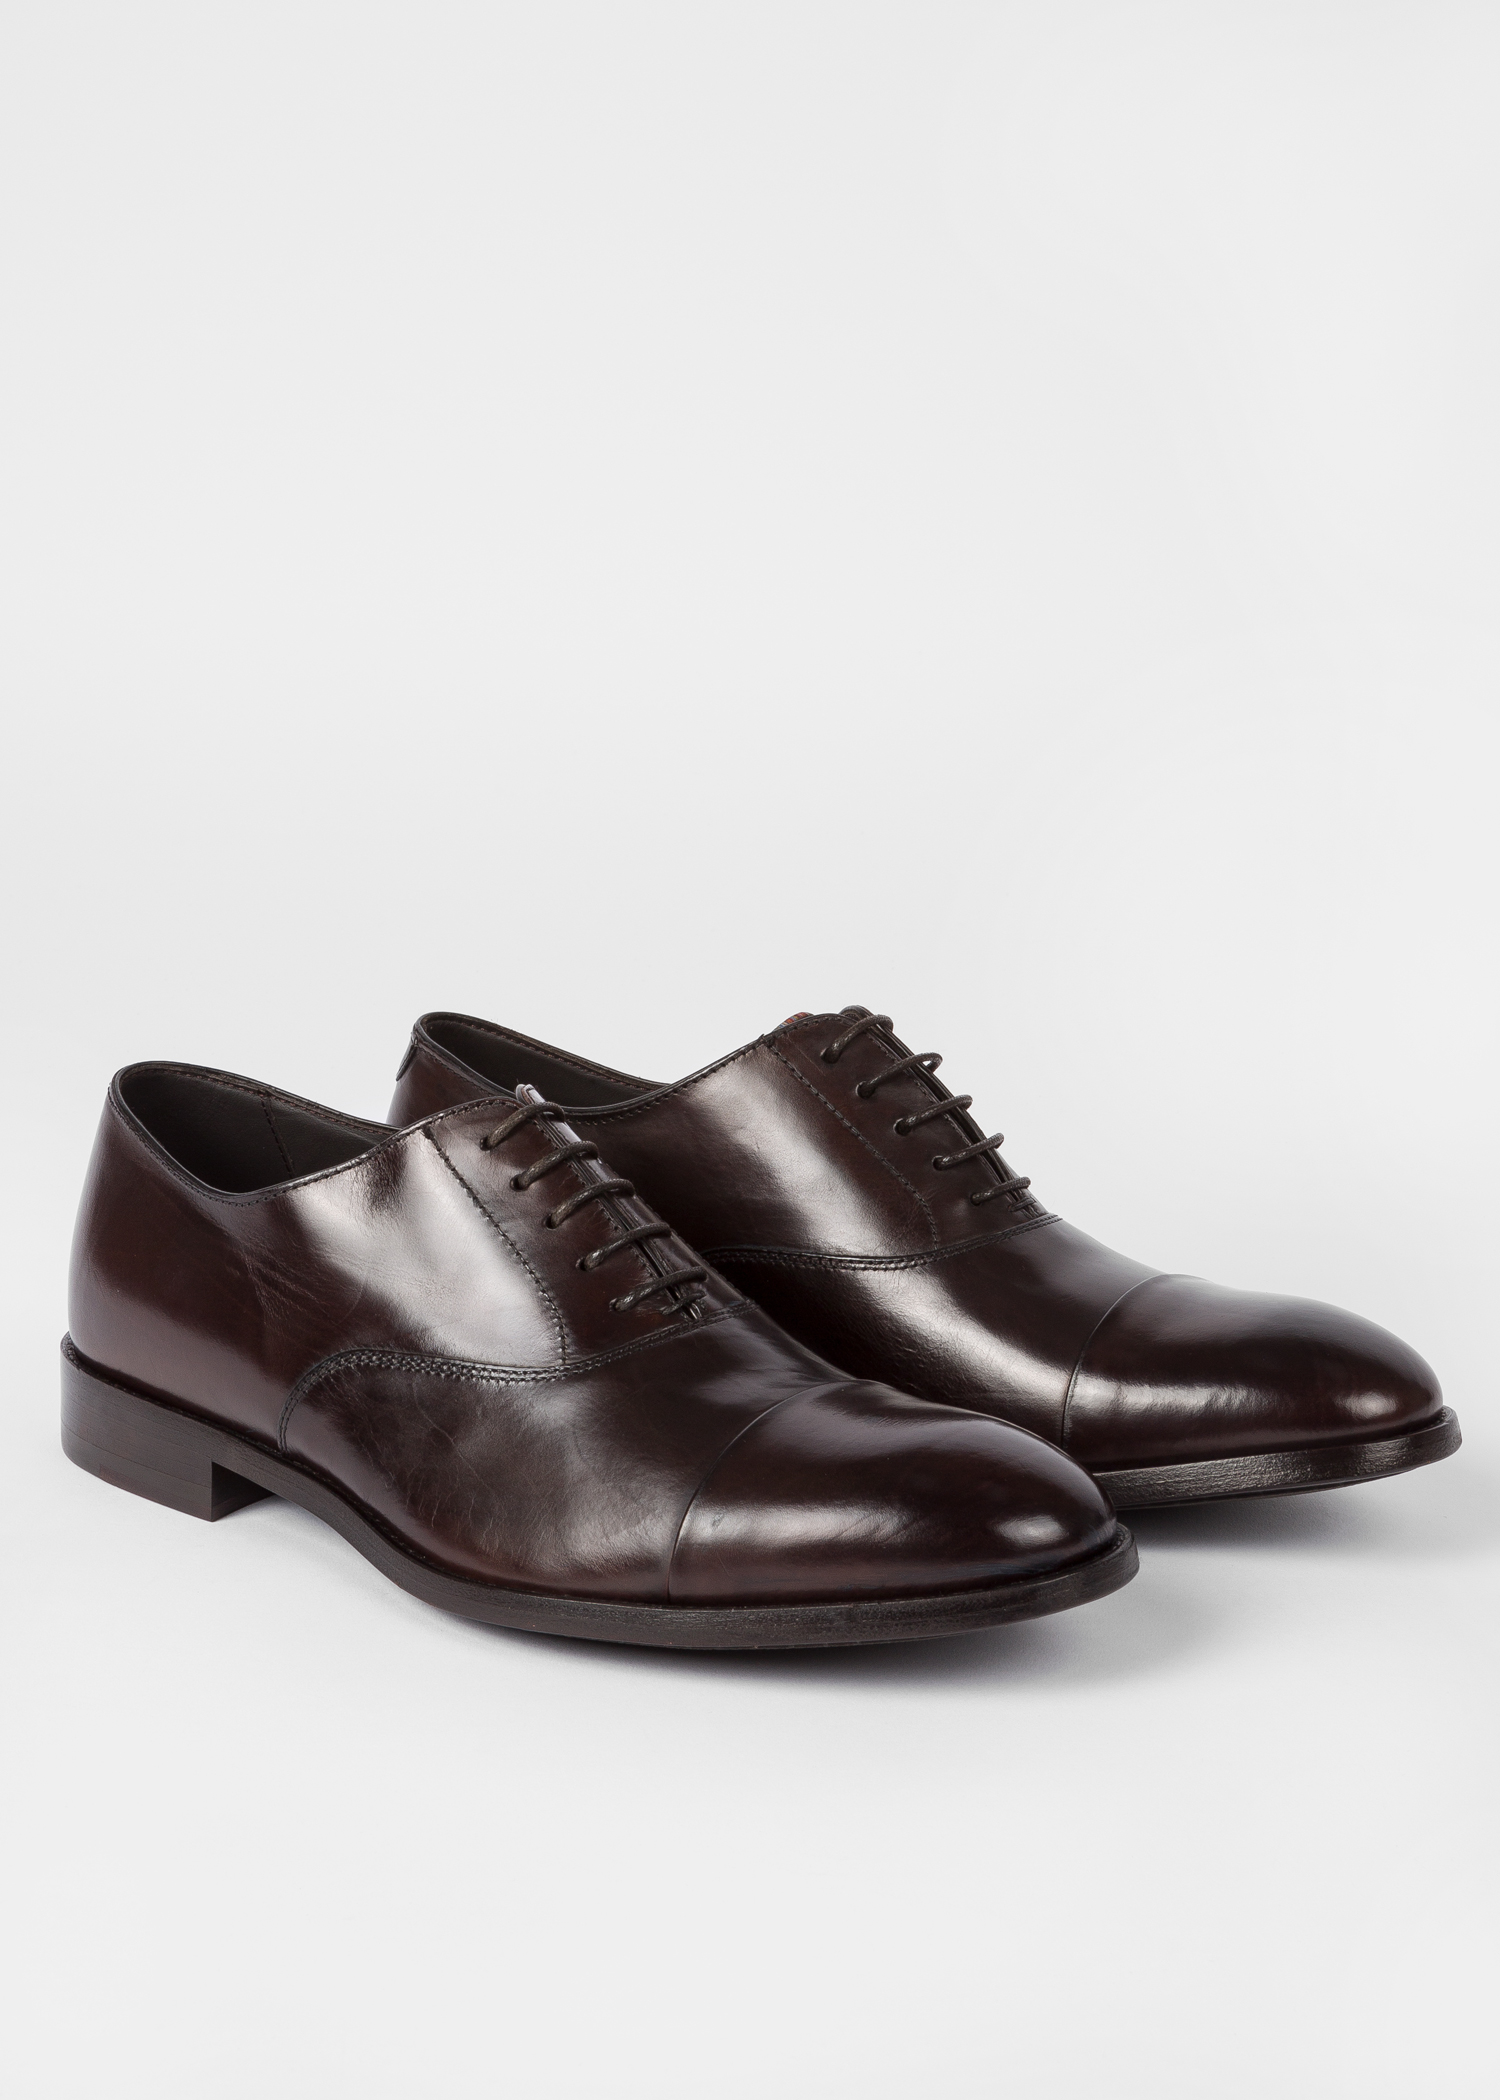 Rouwen Het koud krijgen medeklinker Men's Chocolate Brown Leather 'Brent' Oxford Shoes With 'Signature Stripe'  Details